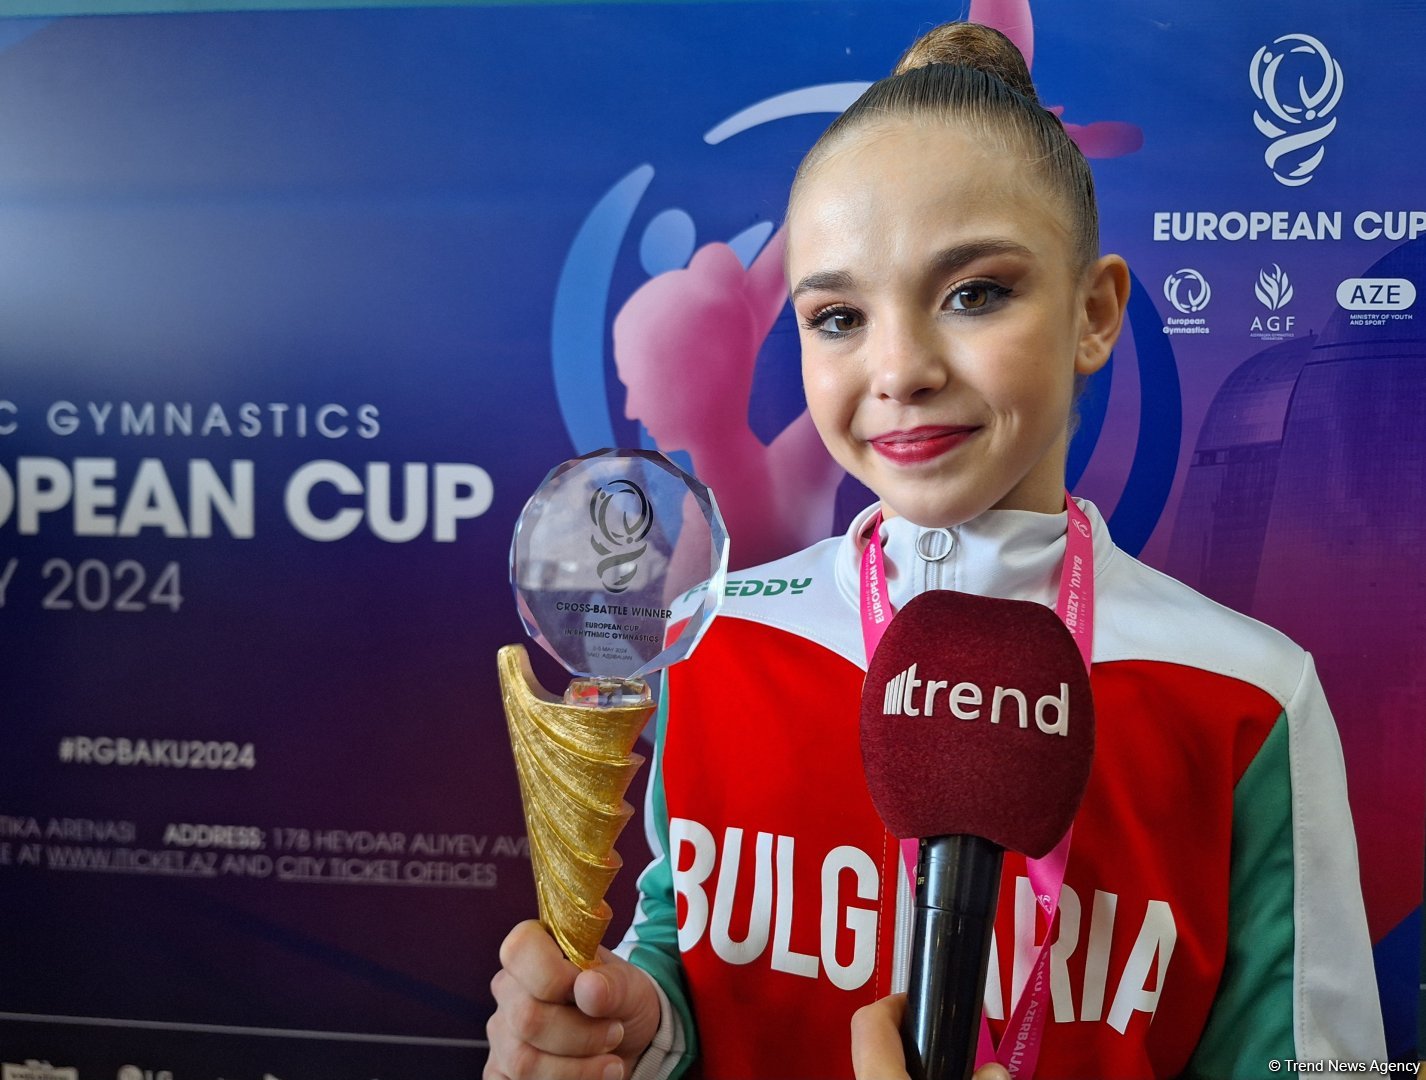 Благодарна Федерации гимнастики Азербайджана за хорошую организацию соревнований - победительница  Кубка Европы